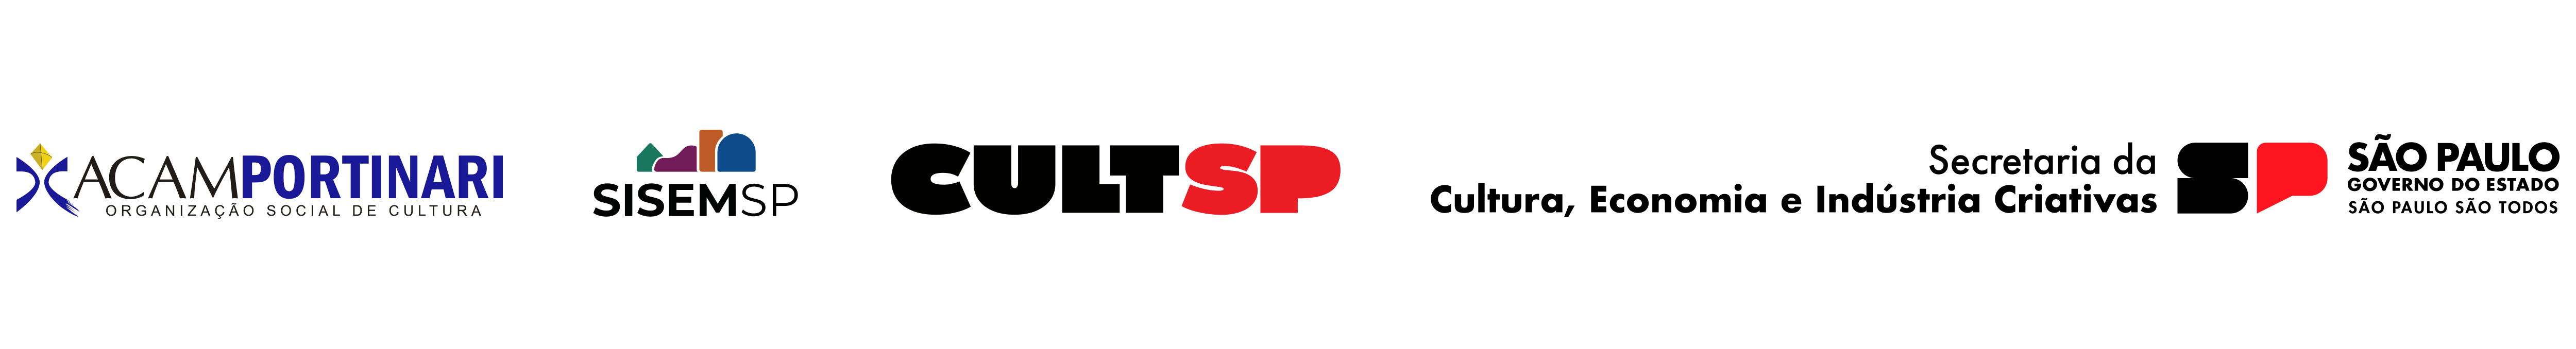 Régua de logos com logo da ACAM Portinari, SISEM-SP e Secretaria da Cultura, Economia e Indústria Criativas - Governo do Estado de São Paulo